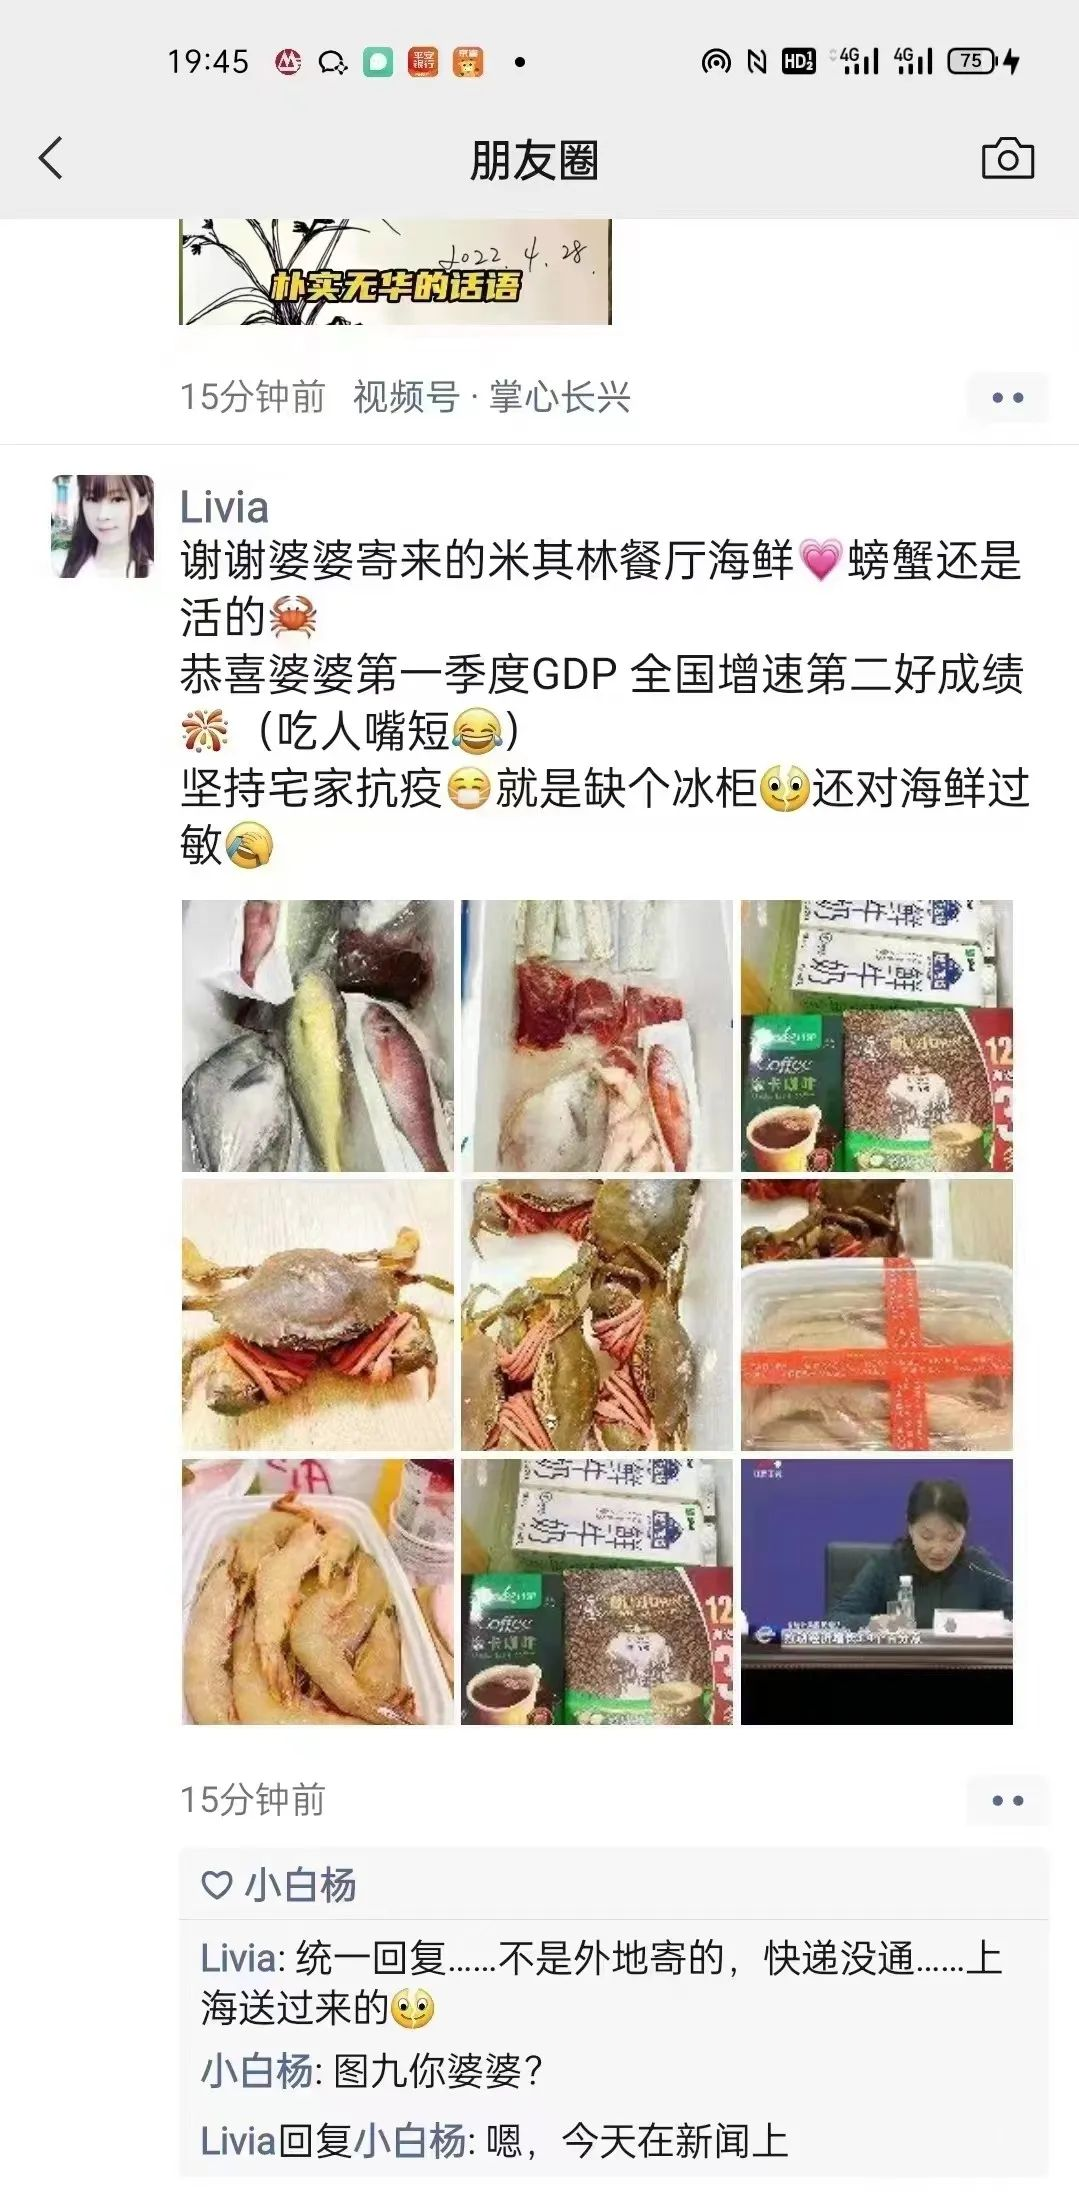 上海儿媳曝光其婆婆让米其林餐厅送大量名贵海鲜给她，并曝光了其婆婆的身份和照片。.png